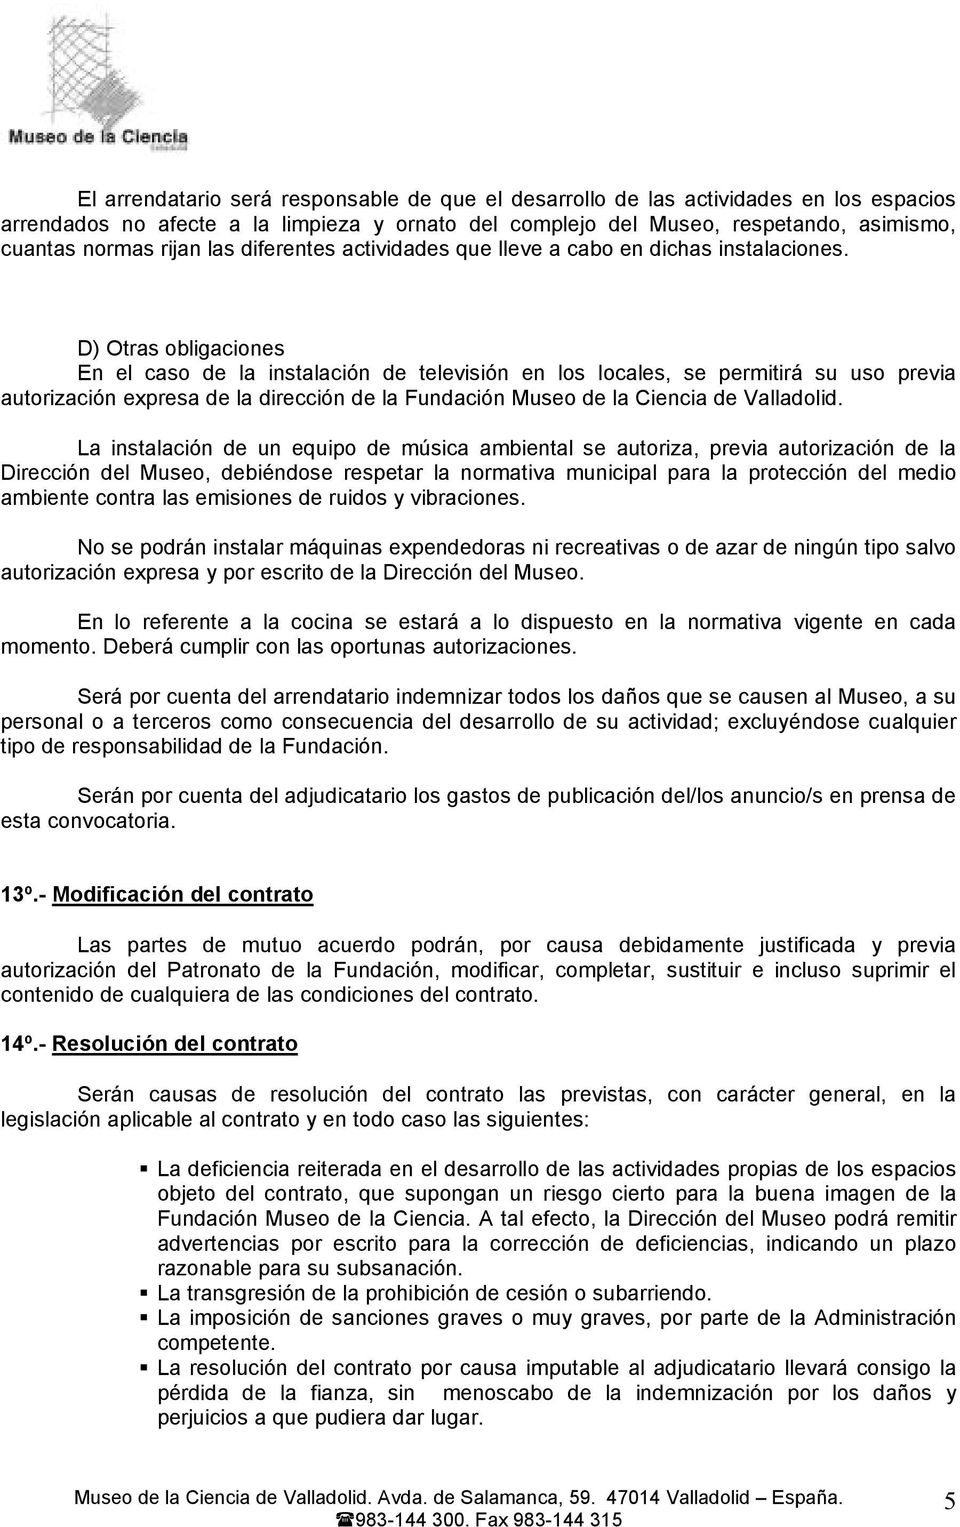 D) Otras obligaciones En el caso de la instalación de televisión en los locales, se permitirá su uso previa autorización expresa de la dirección de la Fundación Museo de la Ciencia de Valladolid.